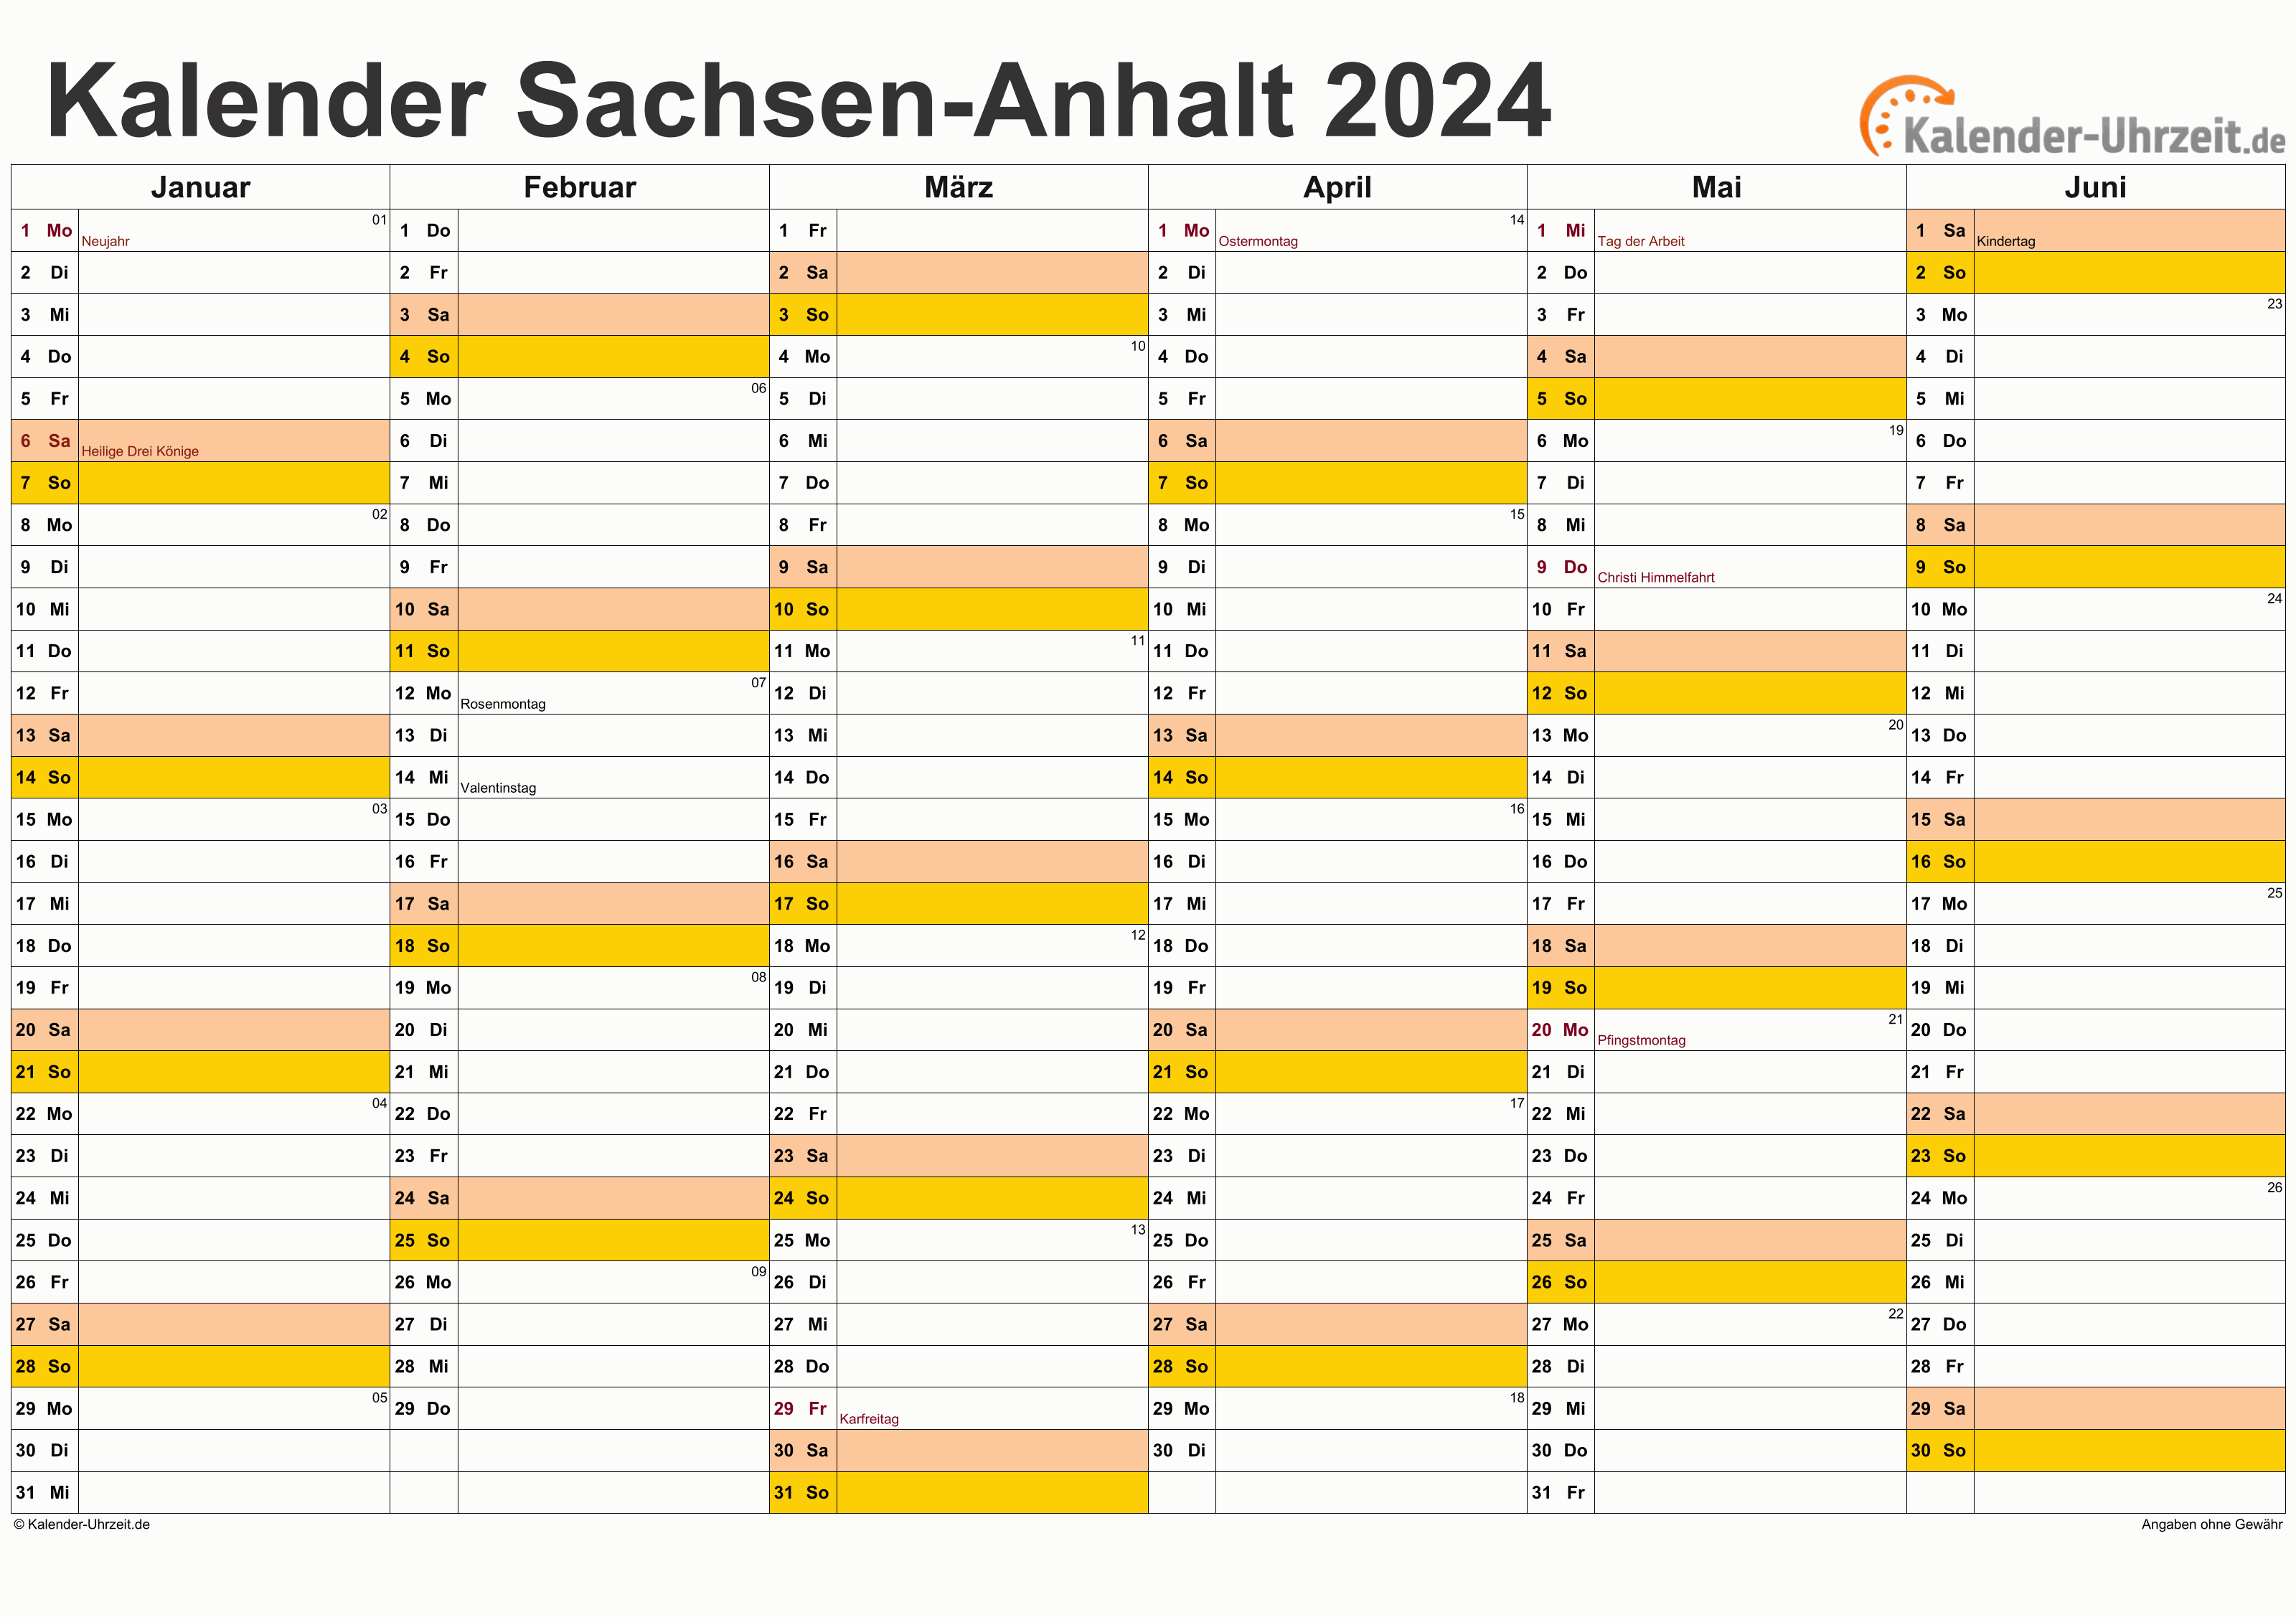 Sachsen-Anhalt Kalender 2024 mit Feiertagen - quer-zweiseitig